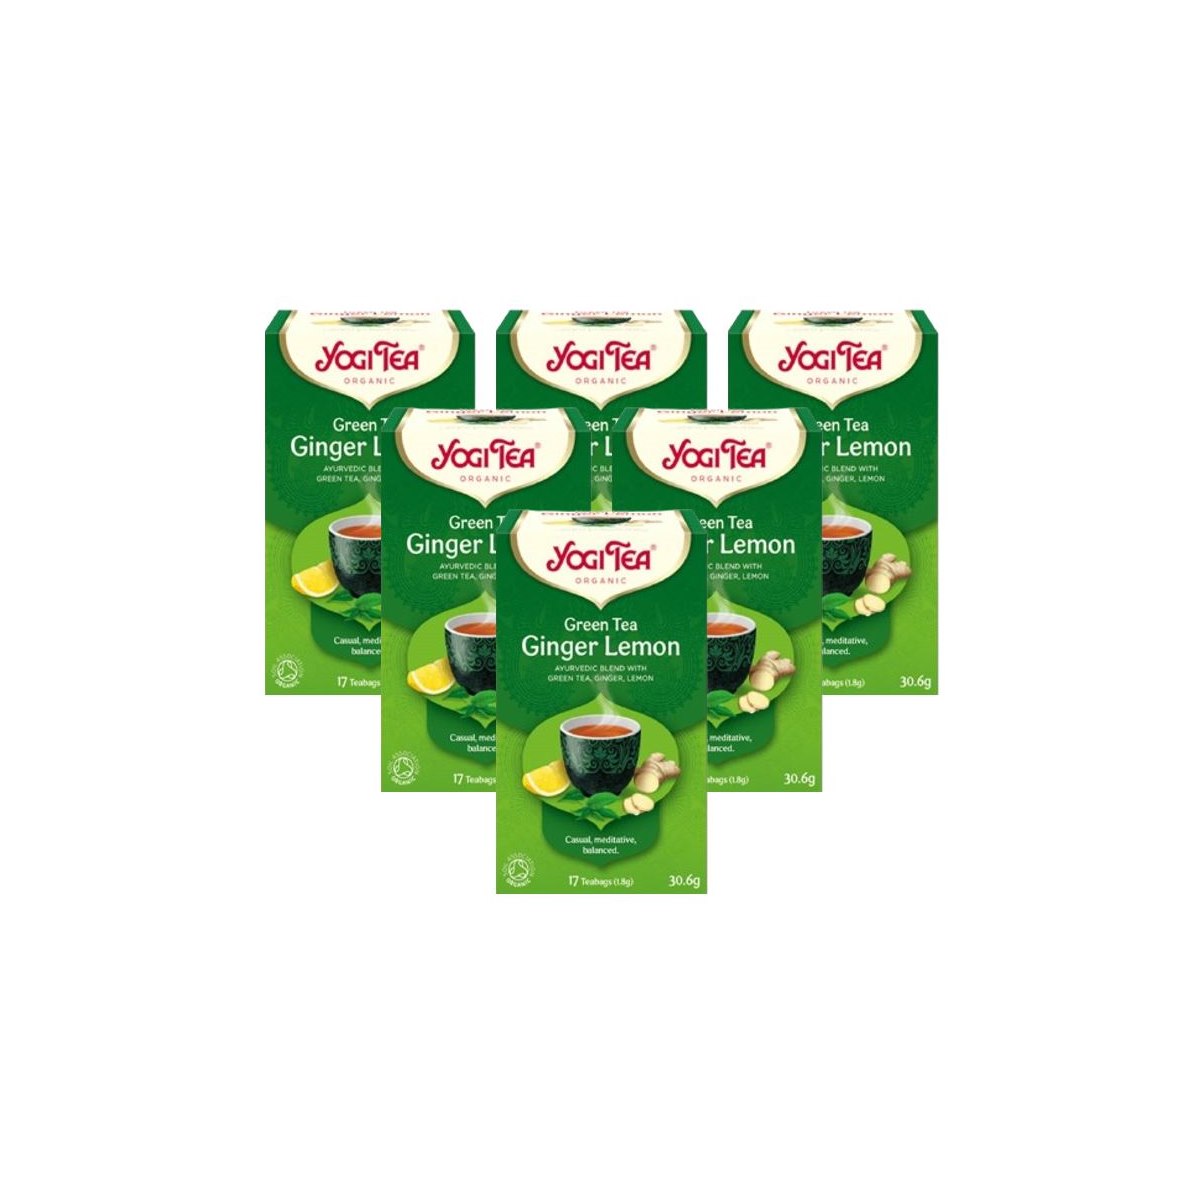 Case of 6 x Yogi Tea Green Tea with Ginger Lemon 17 Bags 30.6g